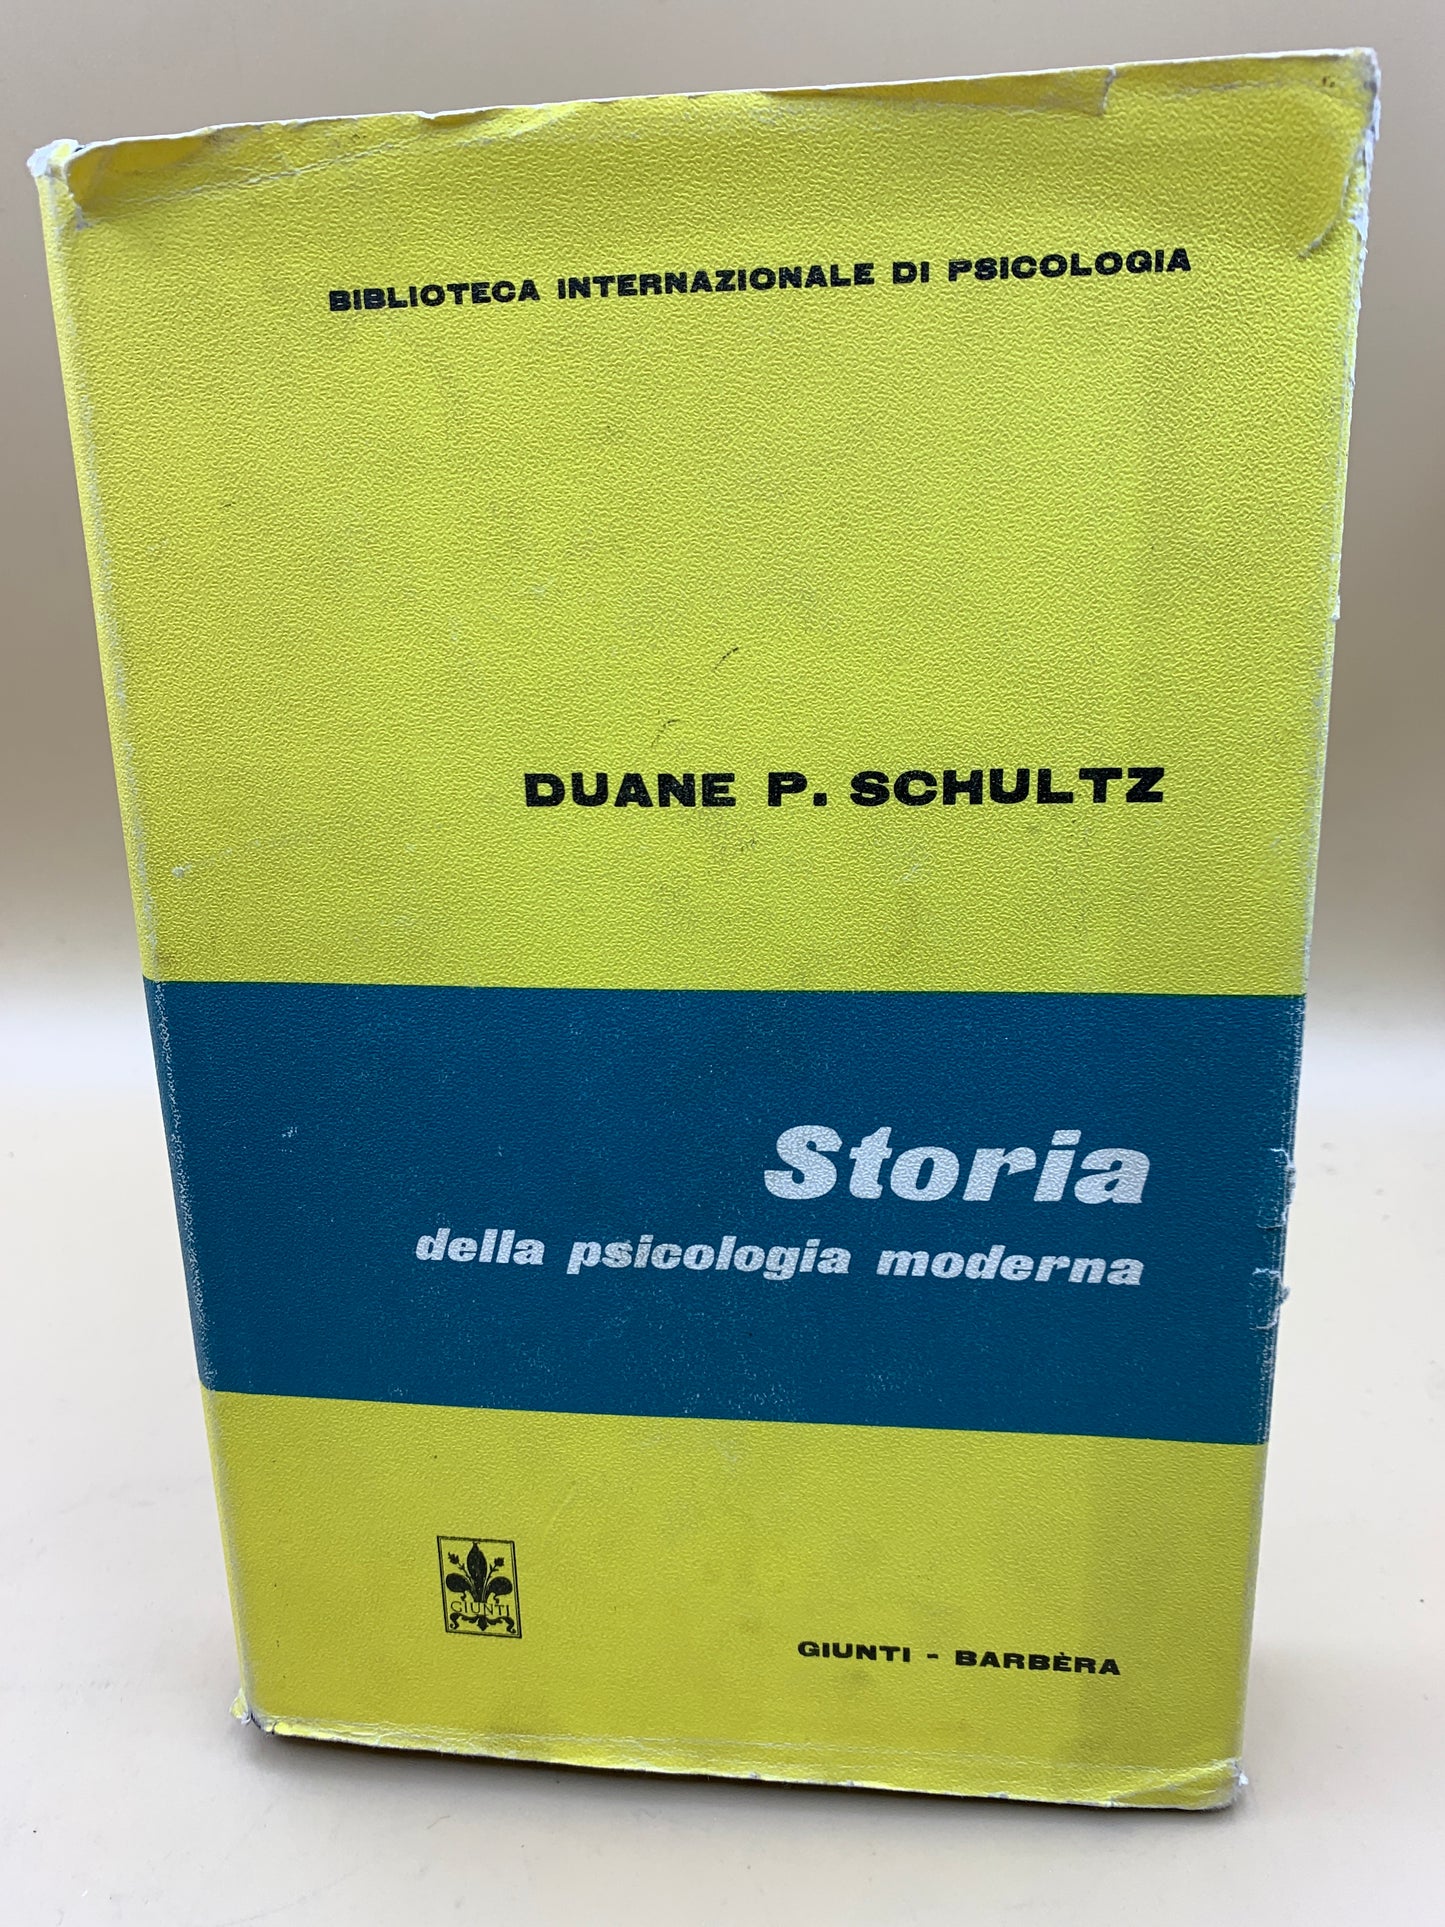 Geschichte der modernen Psychologie – Duane P. Schultz